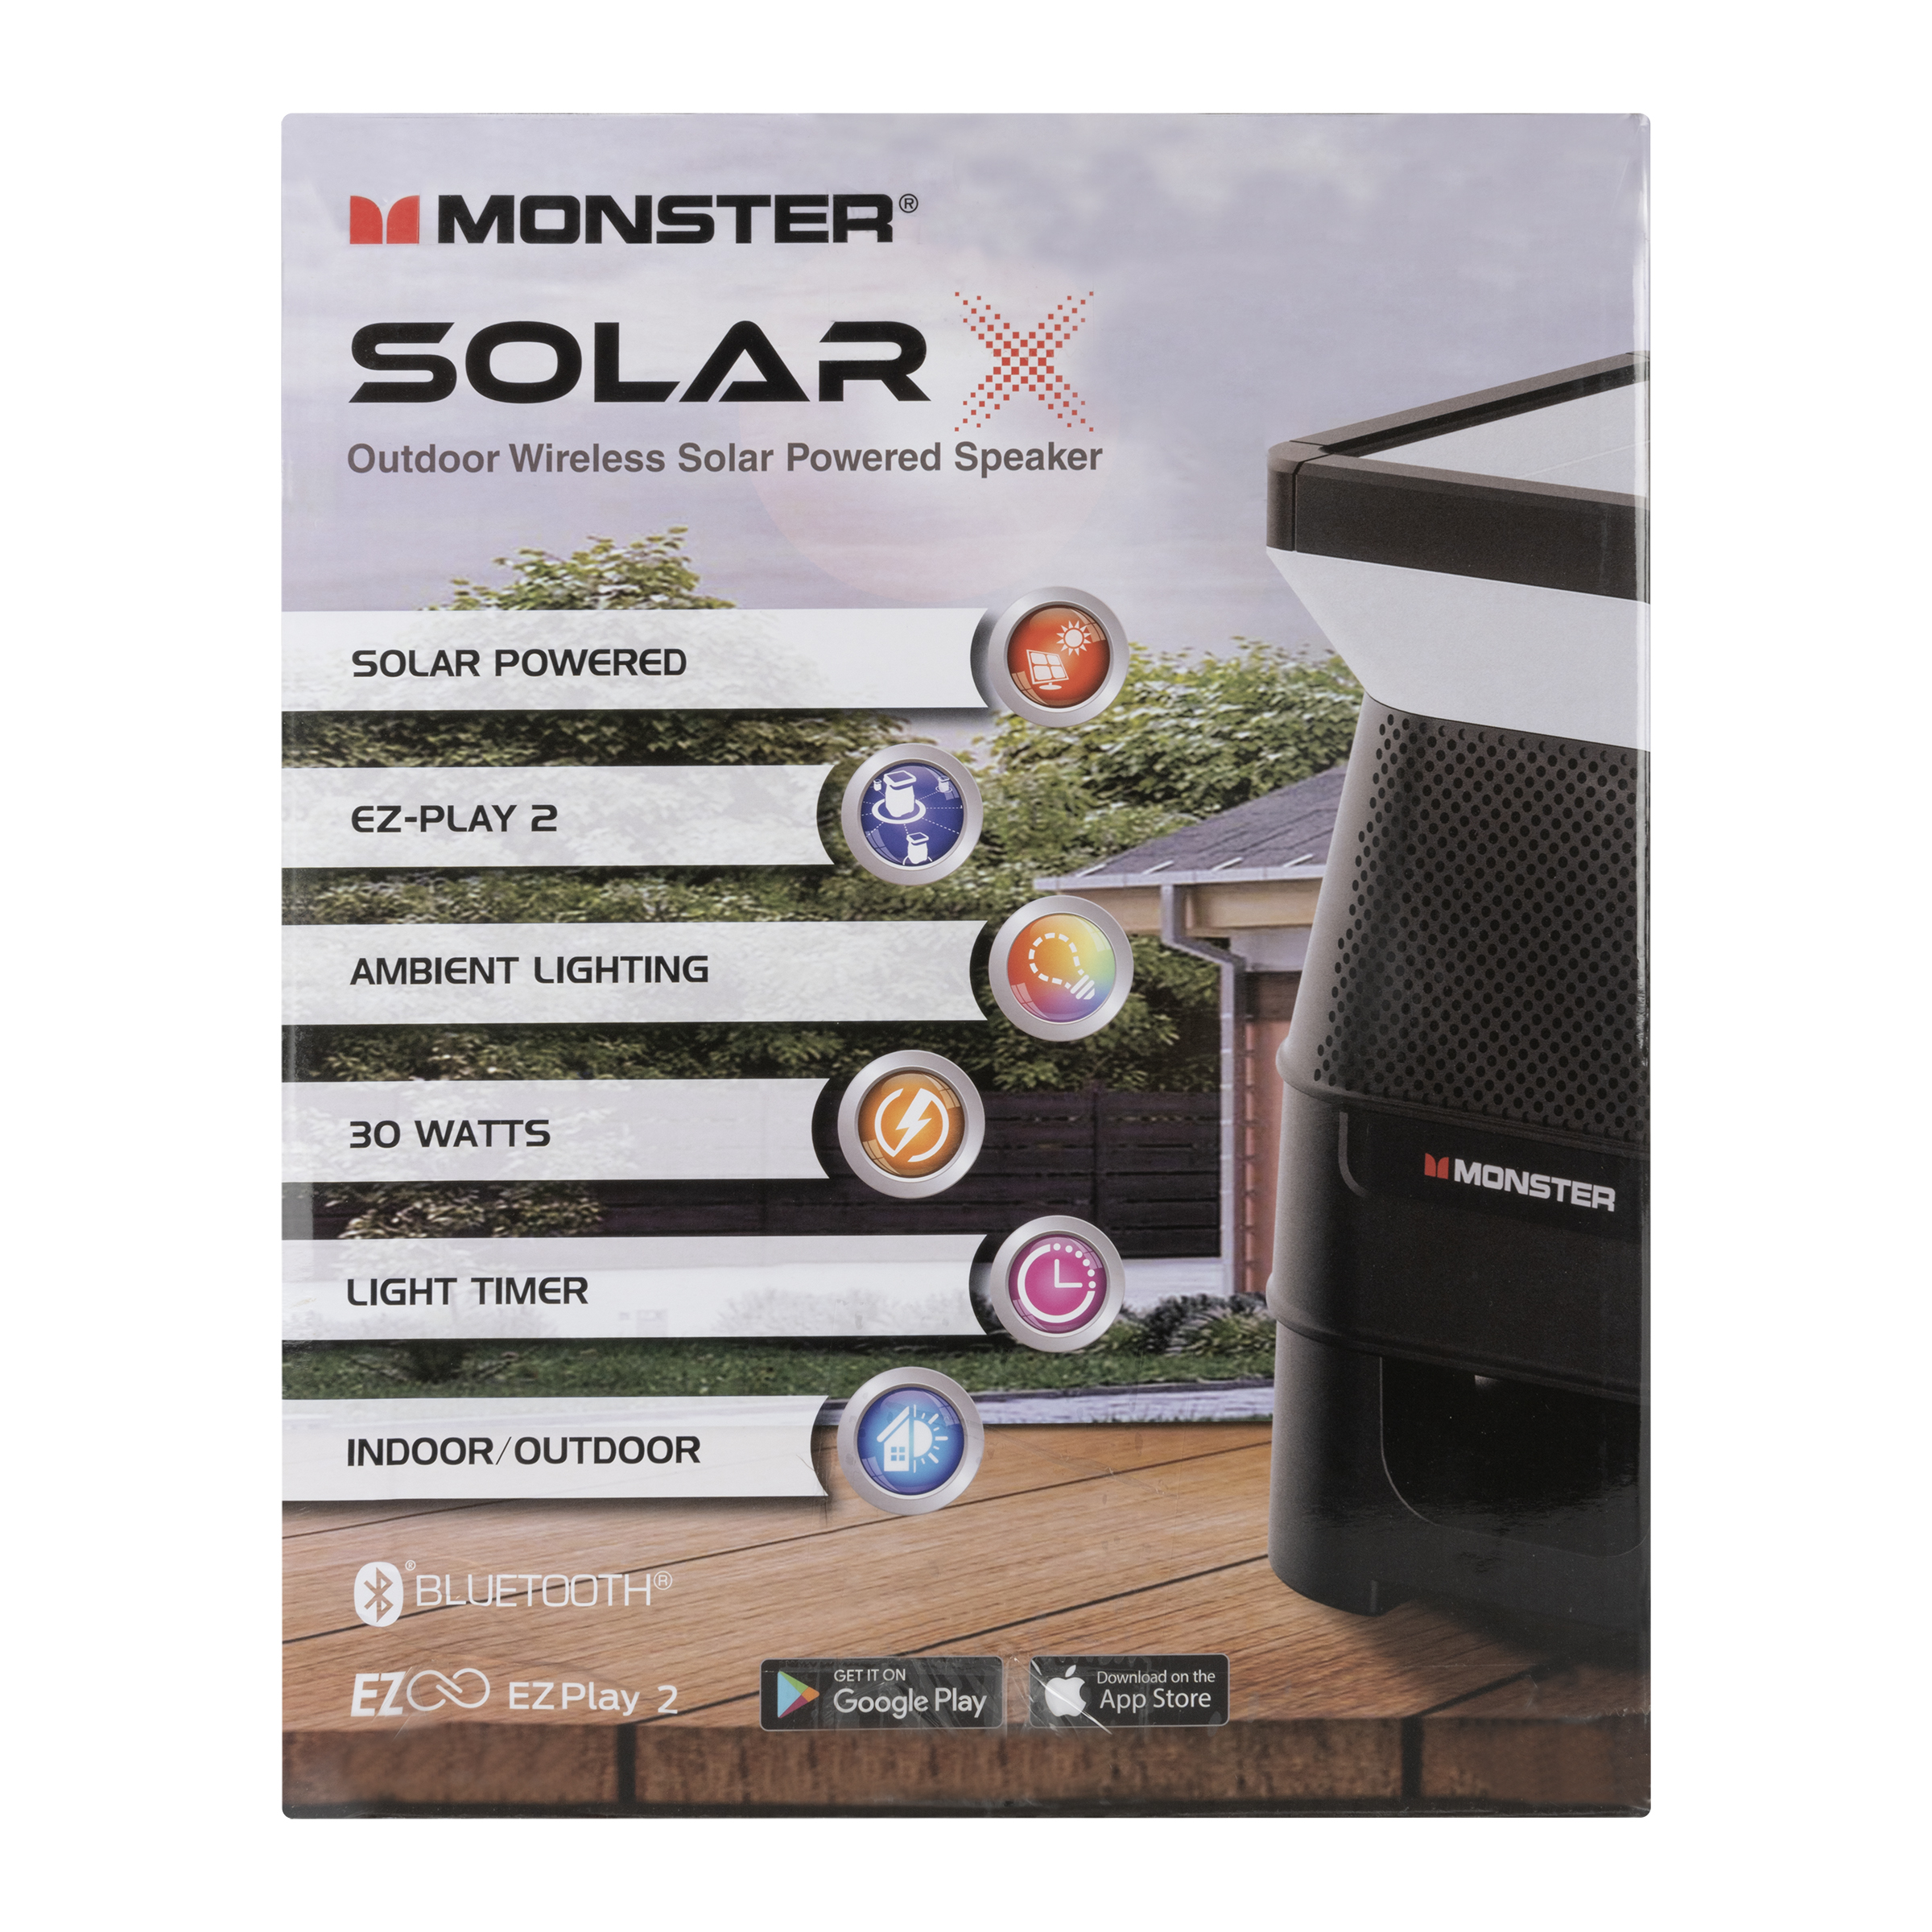 Monster Solar X Outdoor Wireless Solar Powered Speaker